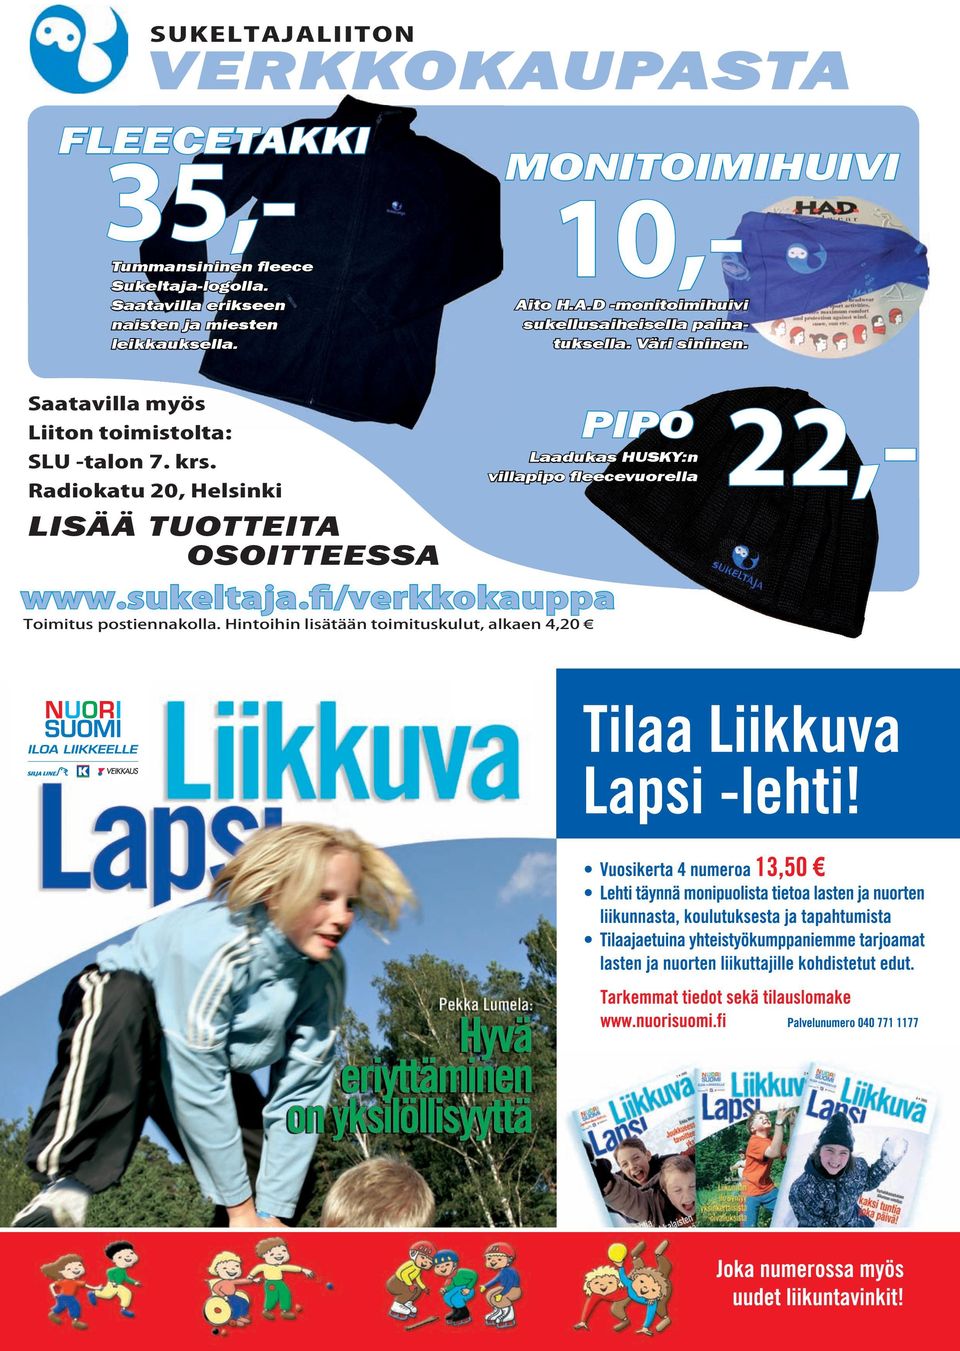 Radiokatu 20, Helsinki MONITOIMIHUIVI Aito H.A.D -monitoimihuivi sukellusaiheisella painatuksella. Väri sininen.